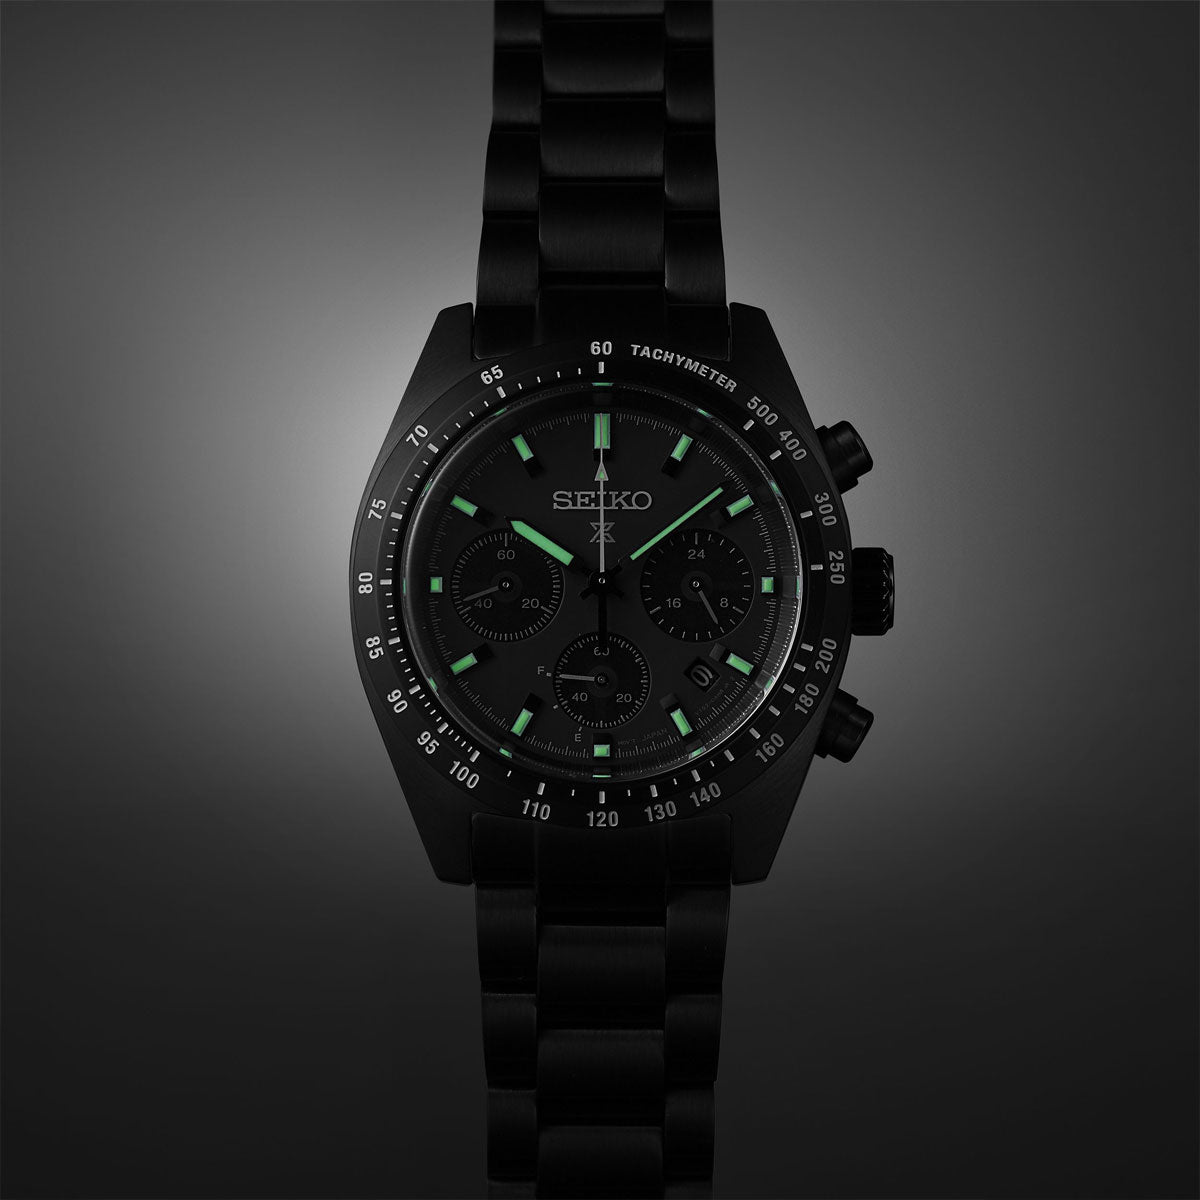 セイコー プロスペックス SBDL103 スピードタイマー ソーラー クロノグラフ メンズ 腕時計 オールブラック 日本製 SEIKO PROSPEX SPEEDTIMER